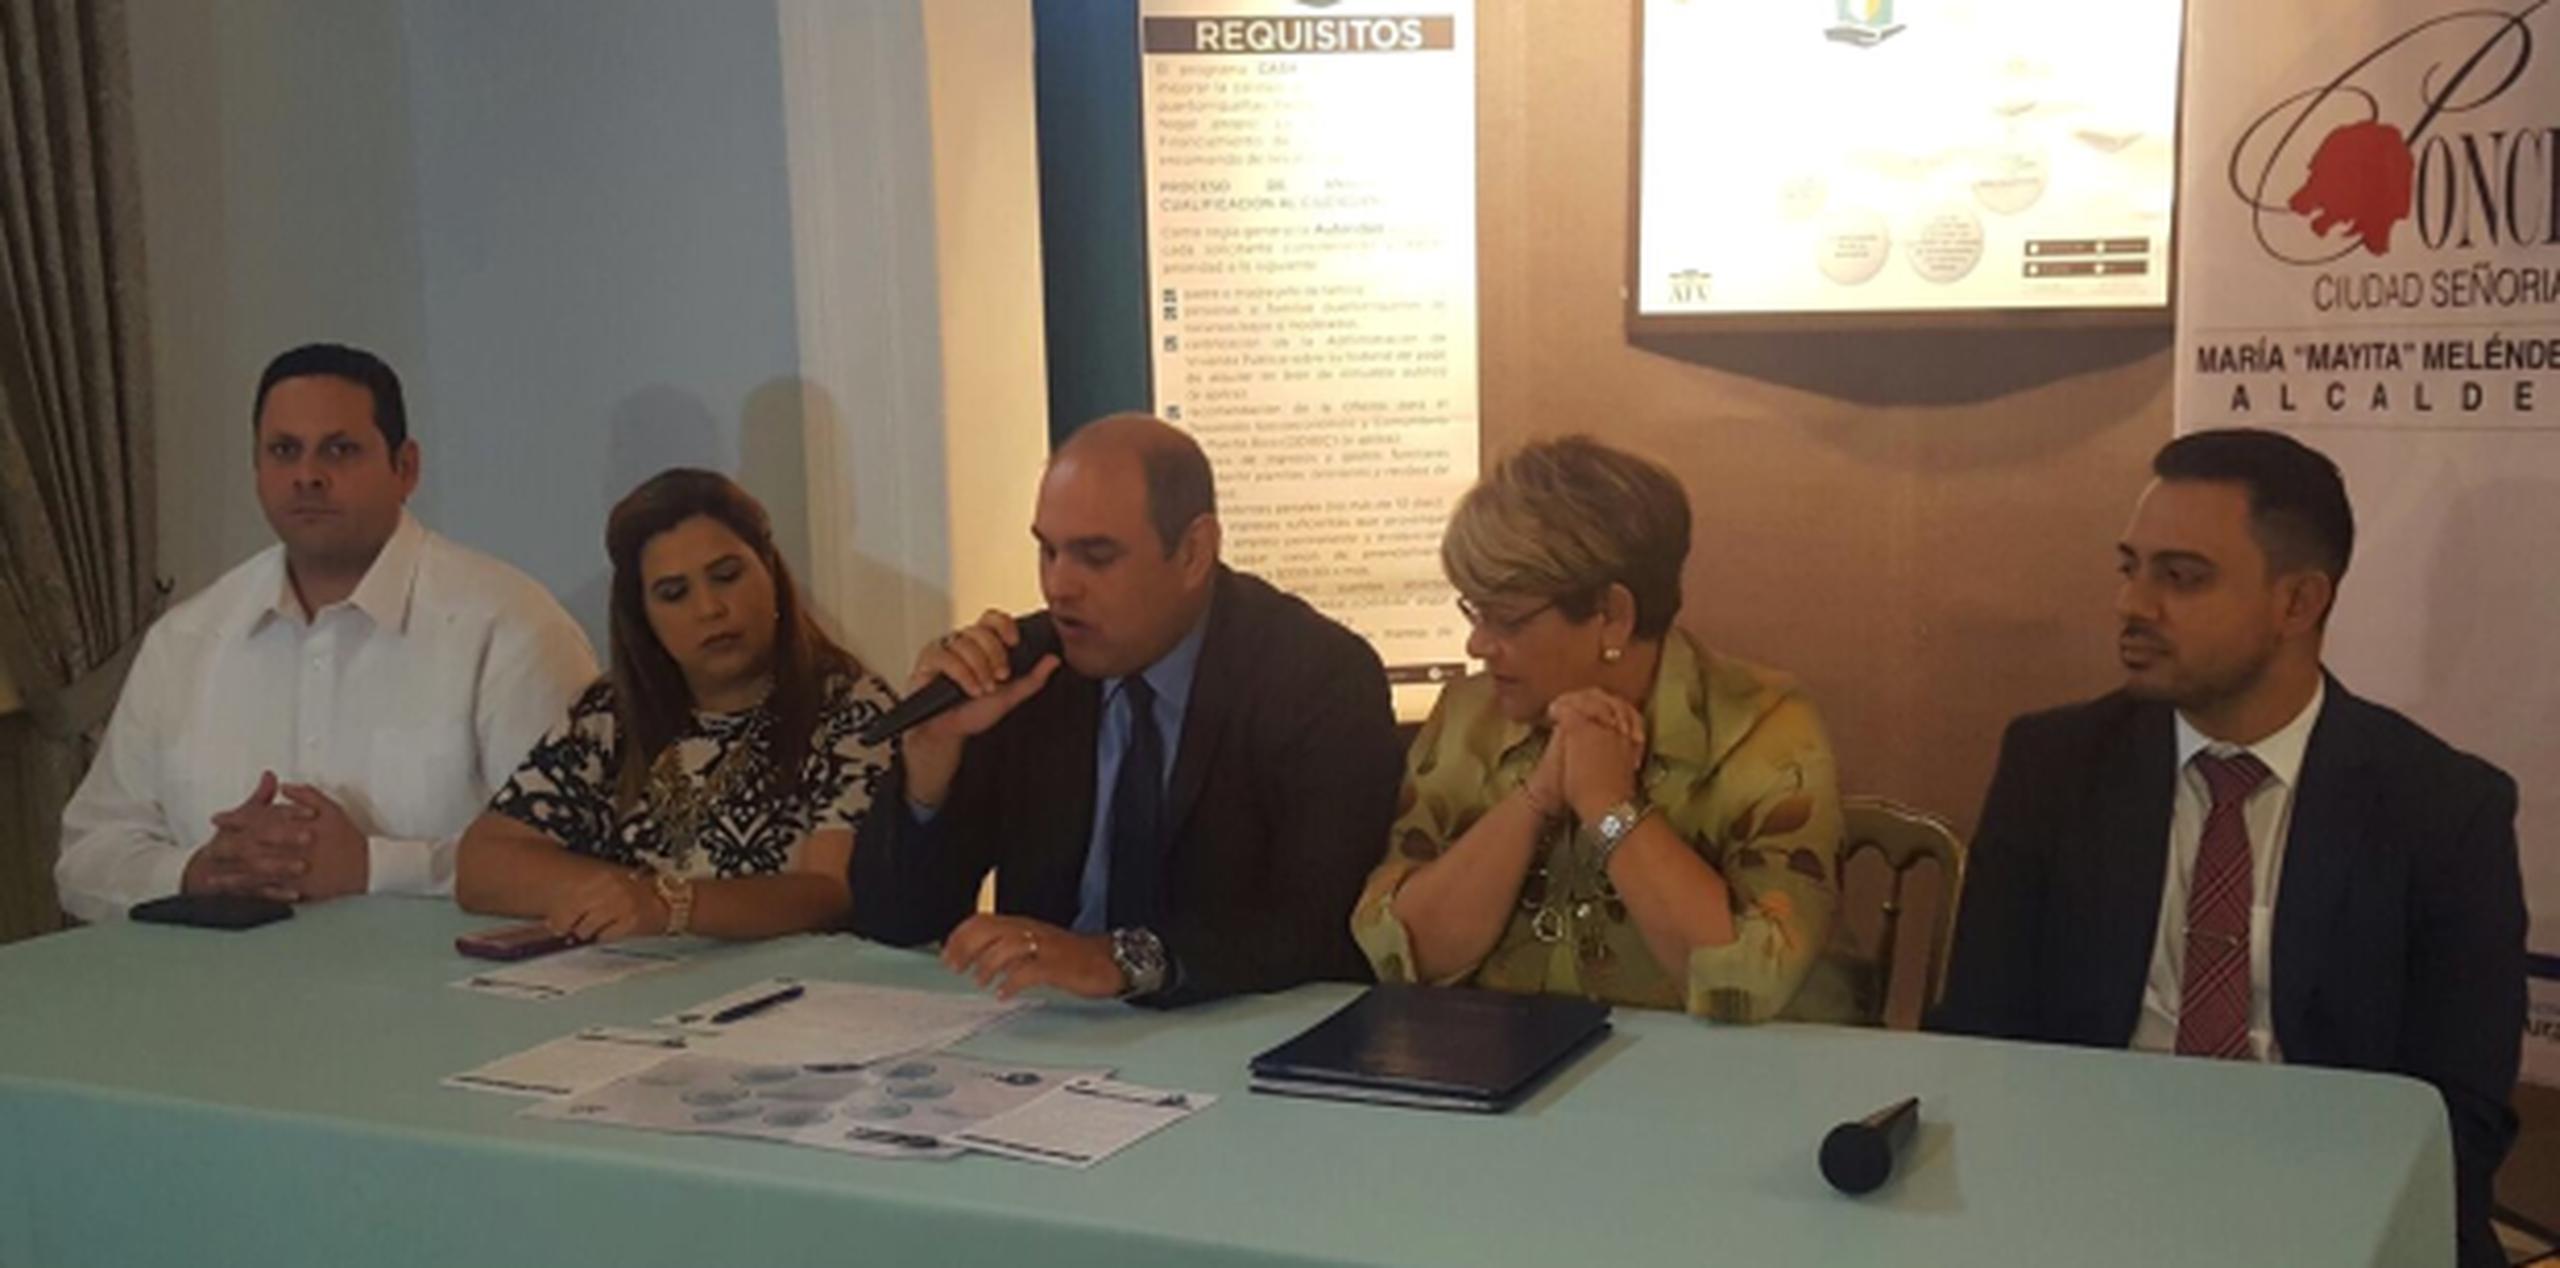 El director ejecutivo de la Autoridad para el Financiamiento de la Vivienda, licenciado Edwin Carreras, participó del encuentro junto con la alcaldesa de Ponce, María “Mayita” Meléndez. (Suministrada)